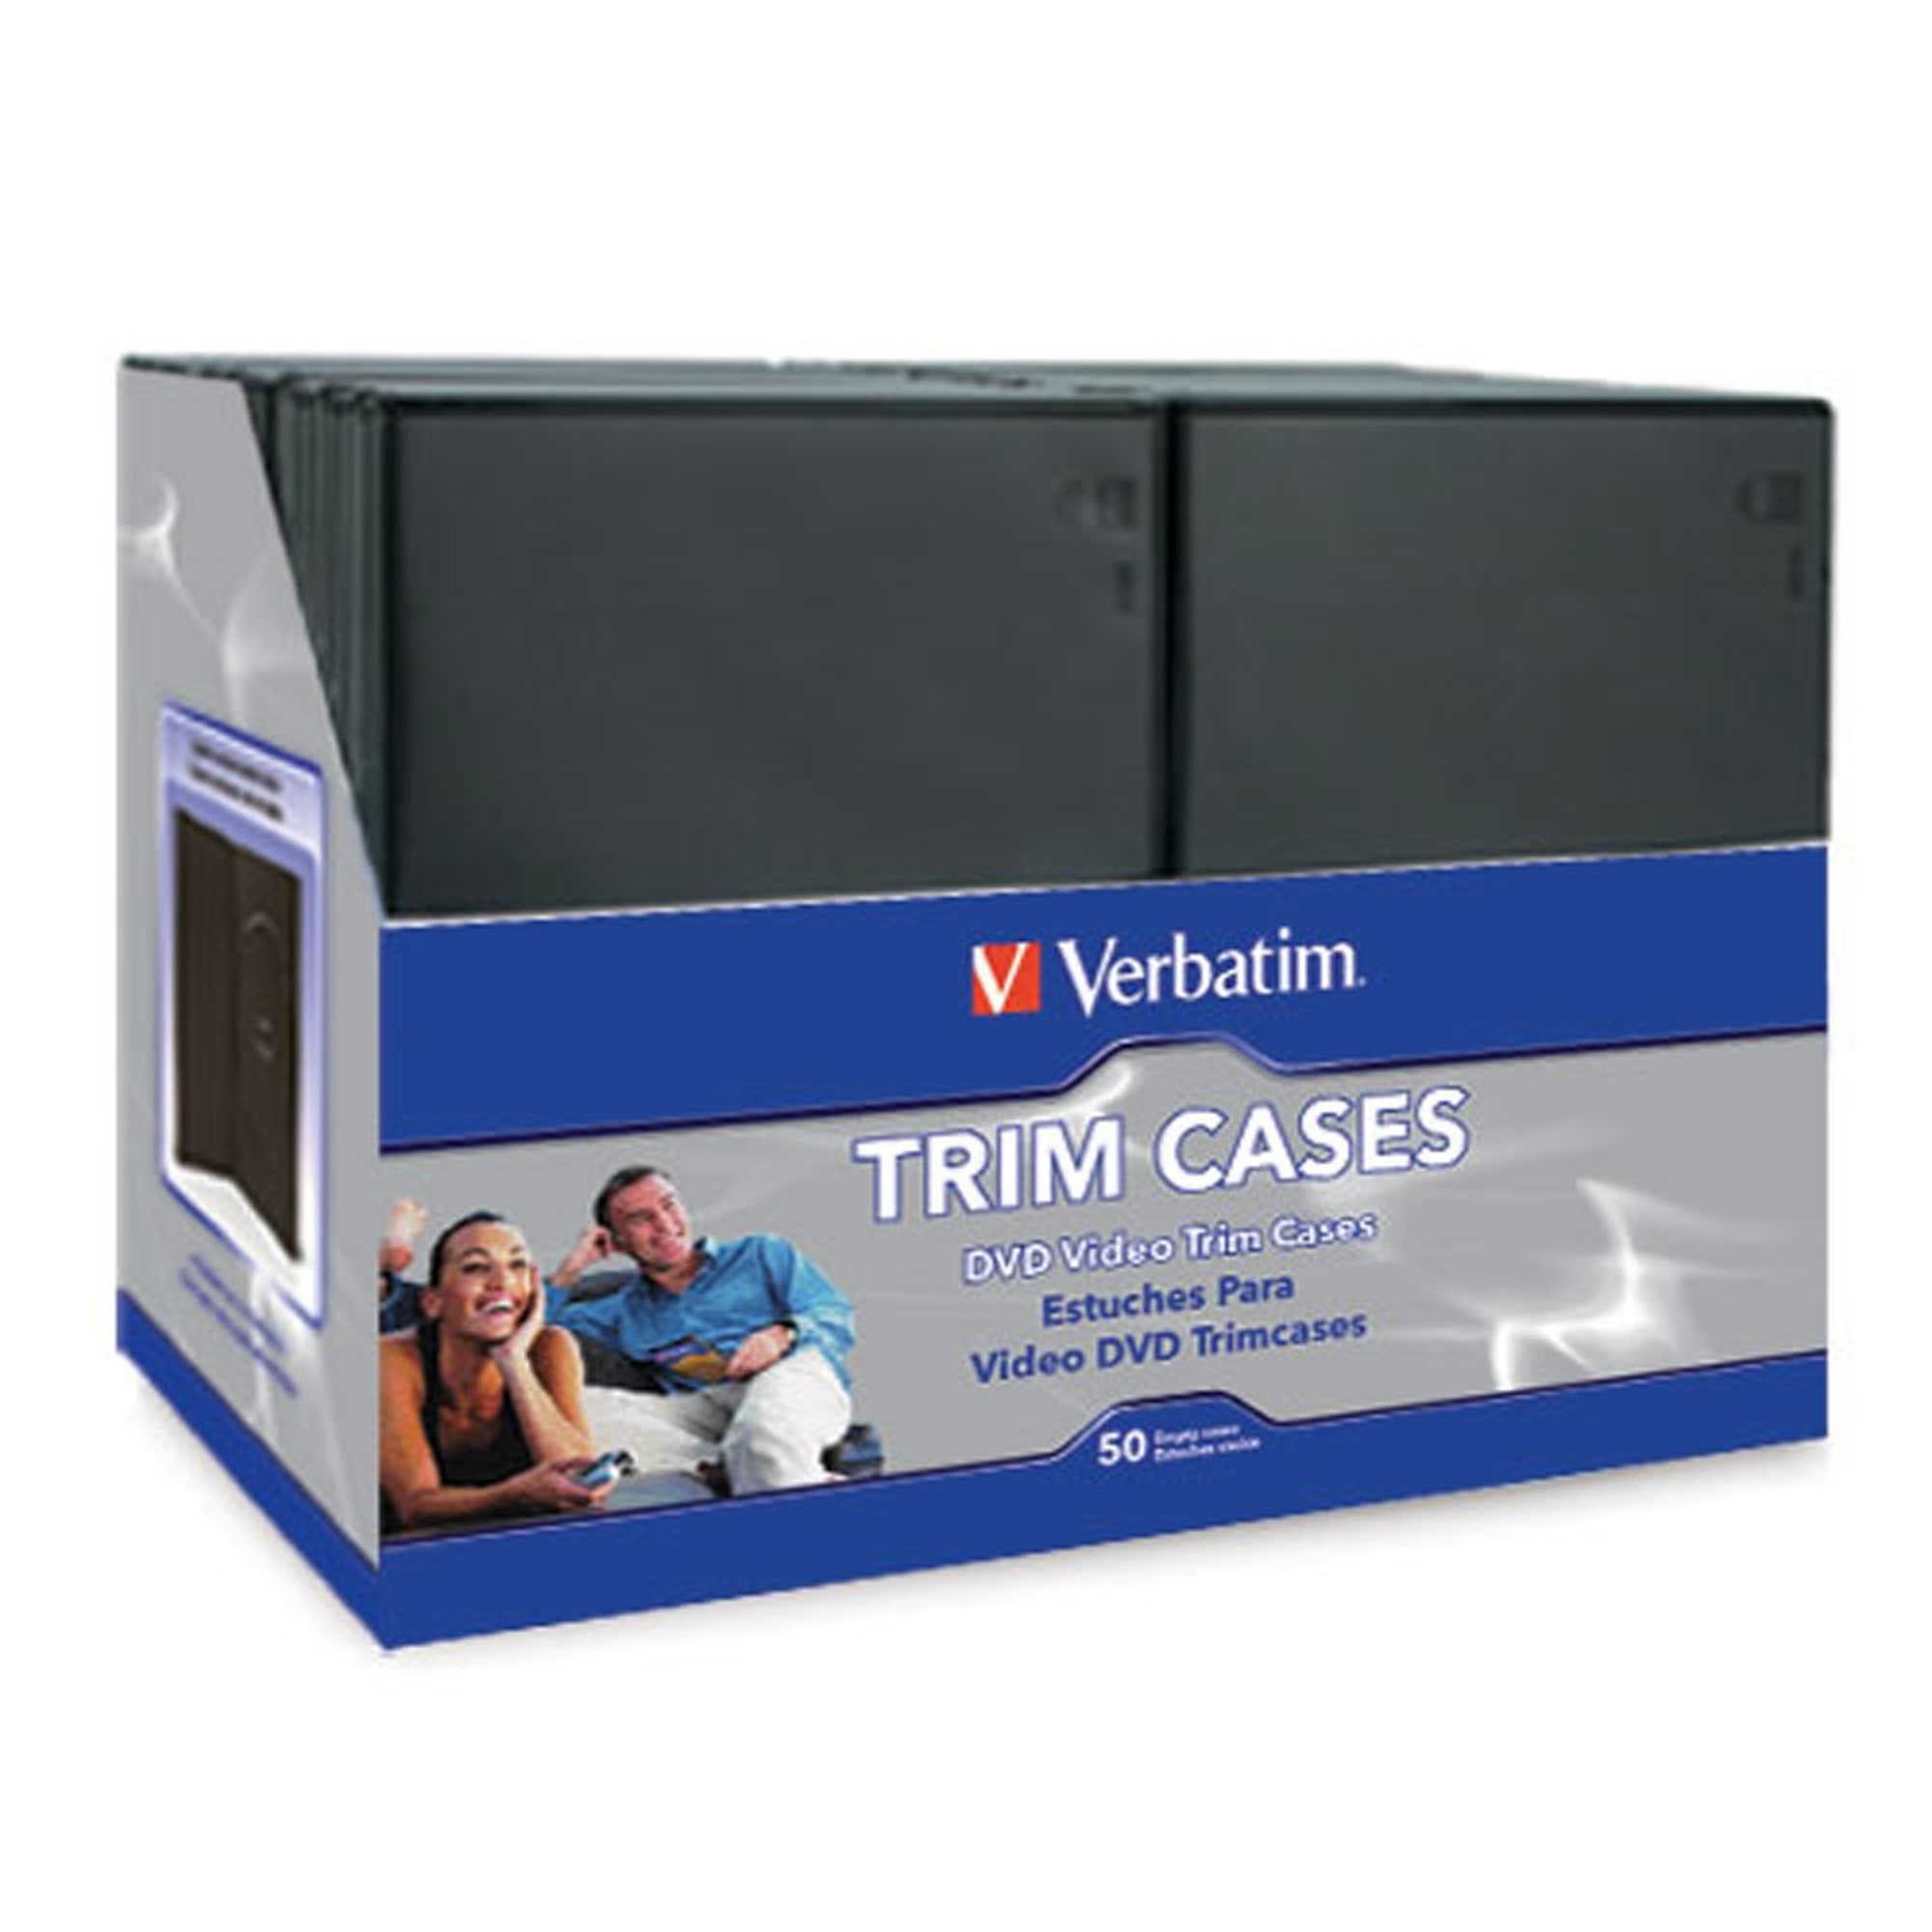 Verbatim CD/DVD Video Trimcases, Black, Case Of 100 - image 1 of 2